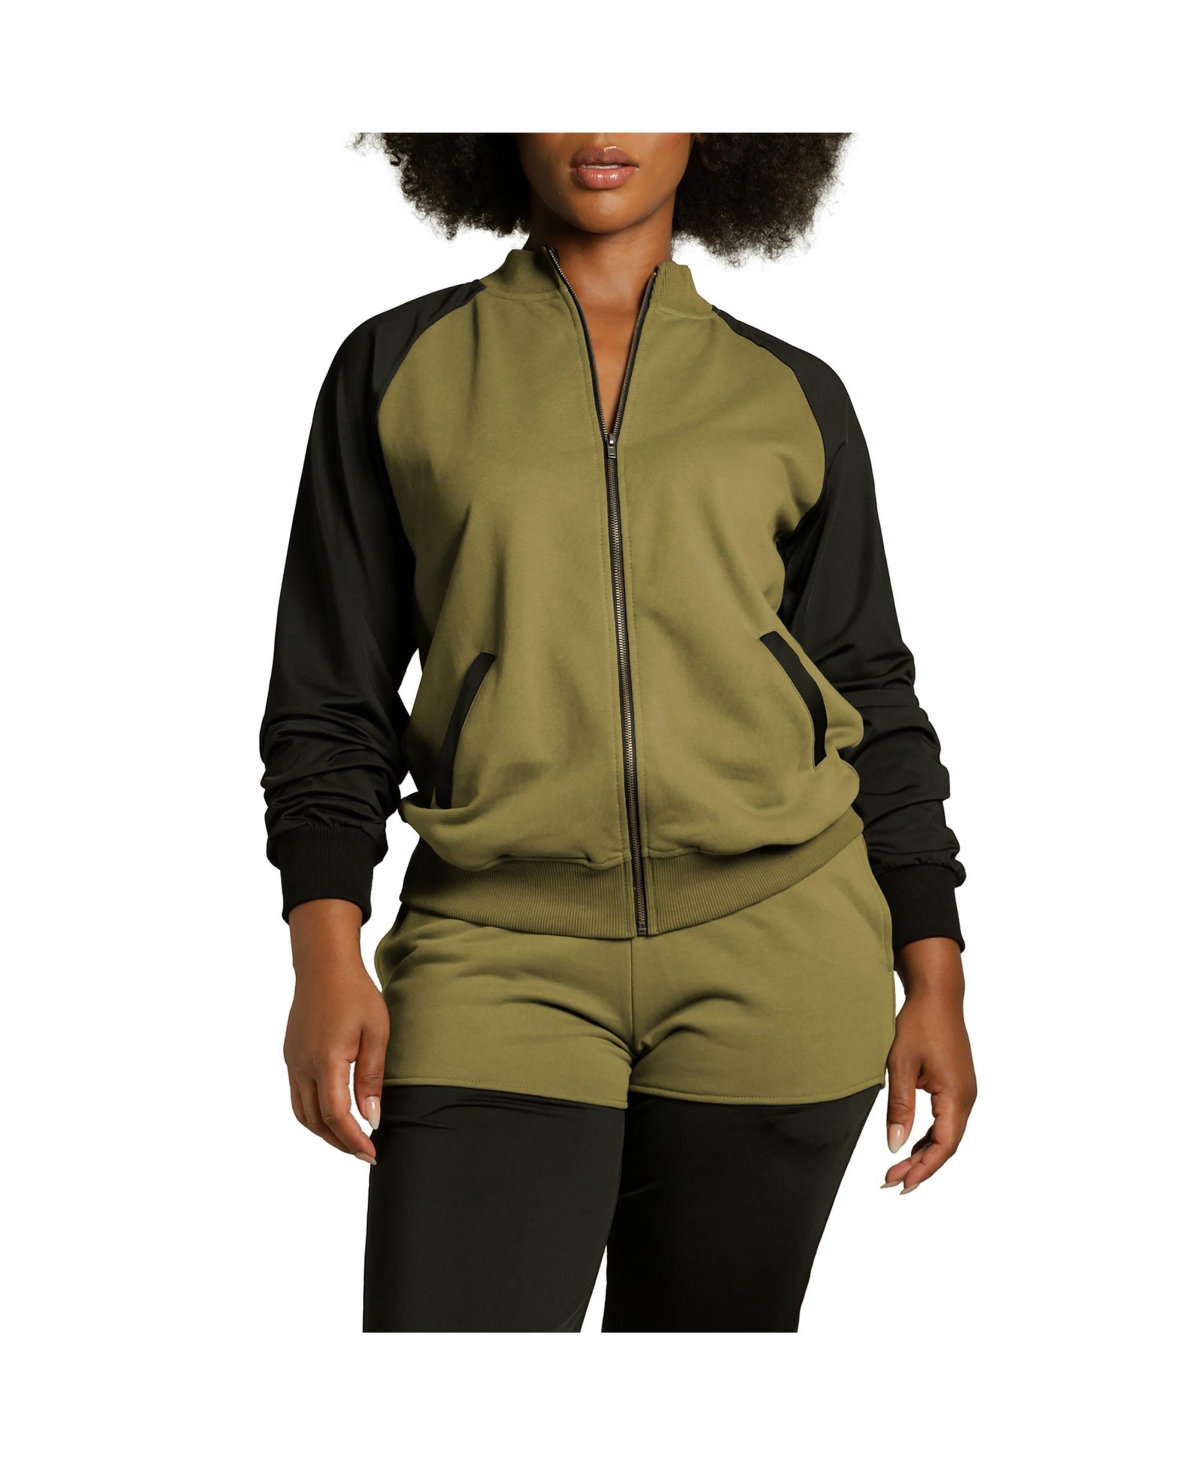 Women's Curvy Fit Zip Up Contrast Blocked Sweatshirt Jacket - Light olive